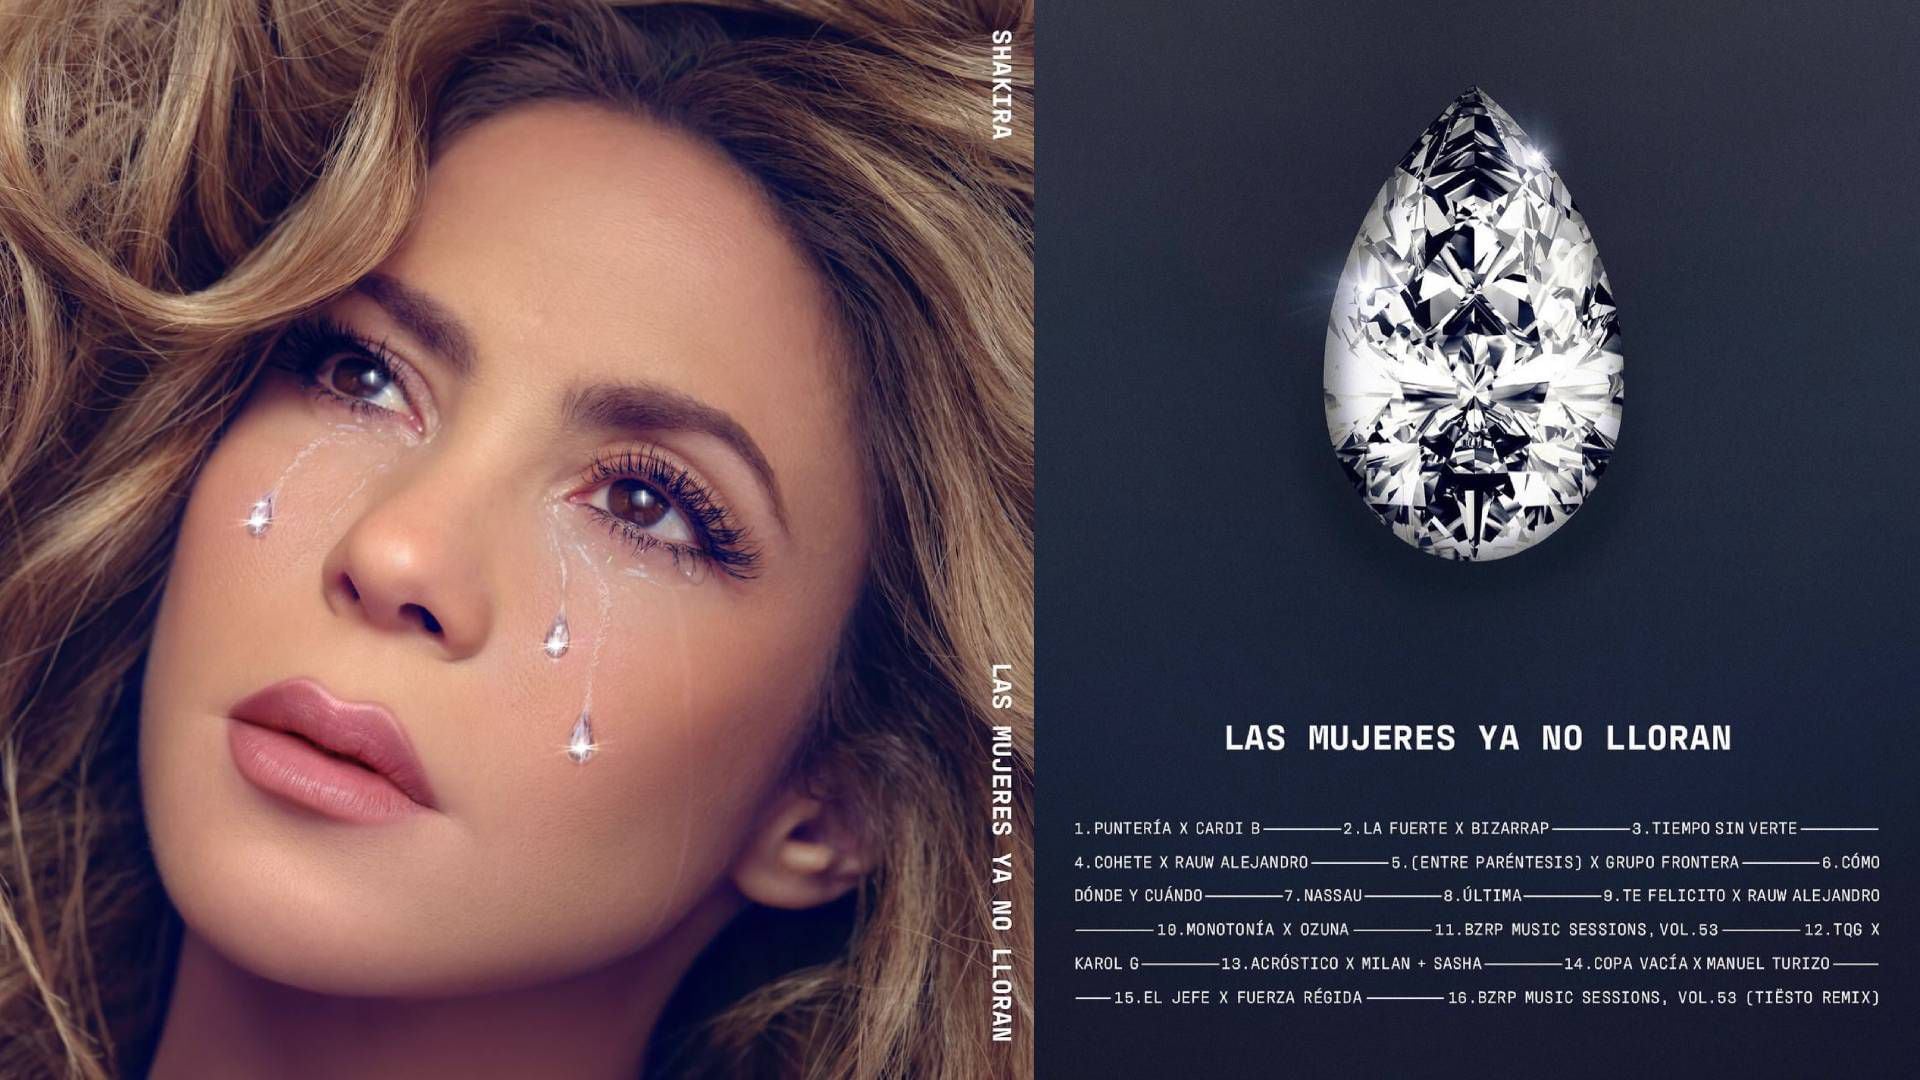 Shakira revela el tracklist completo de 'Las mujeres ya no lloran'